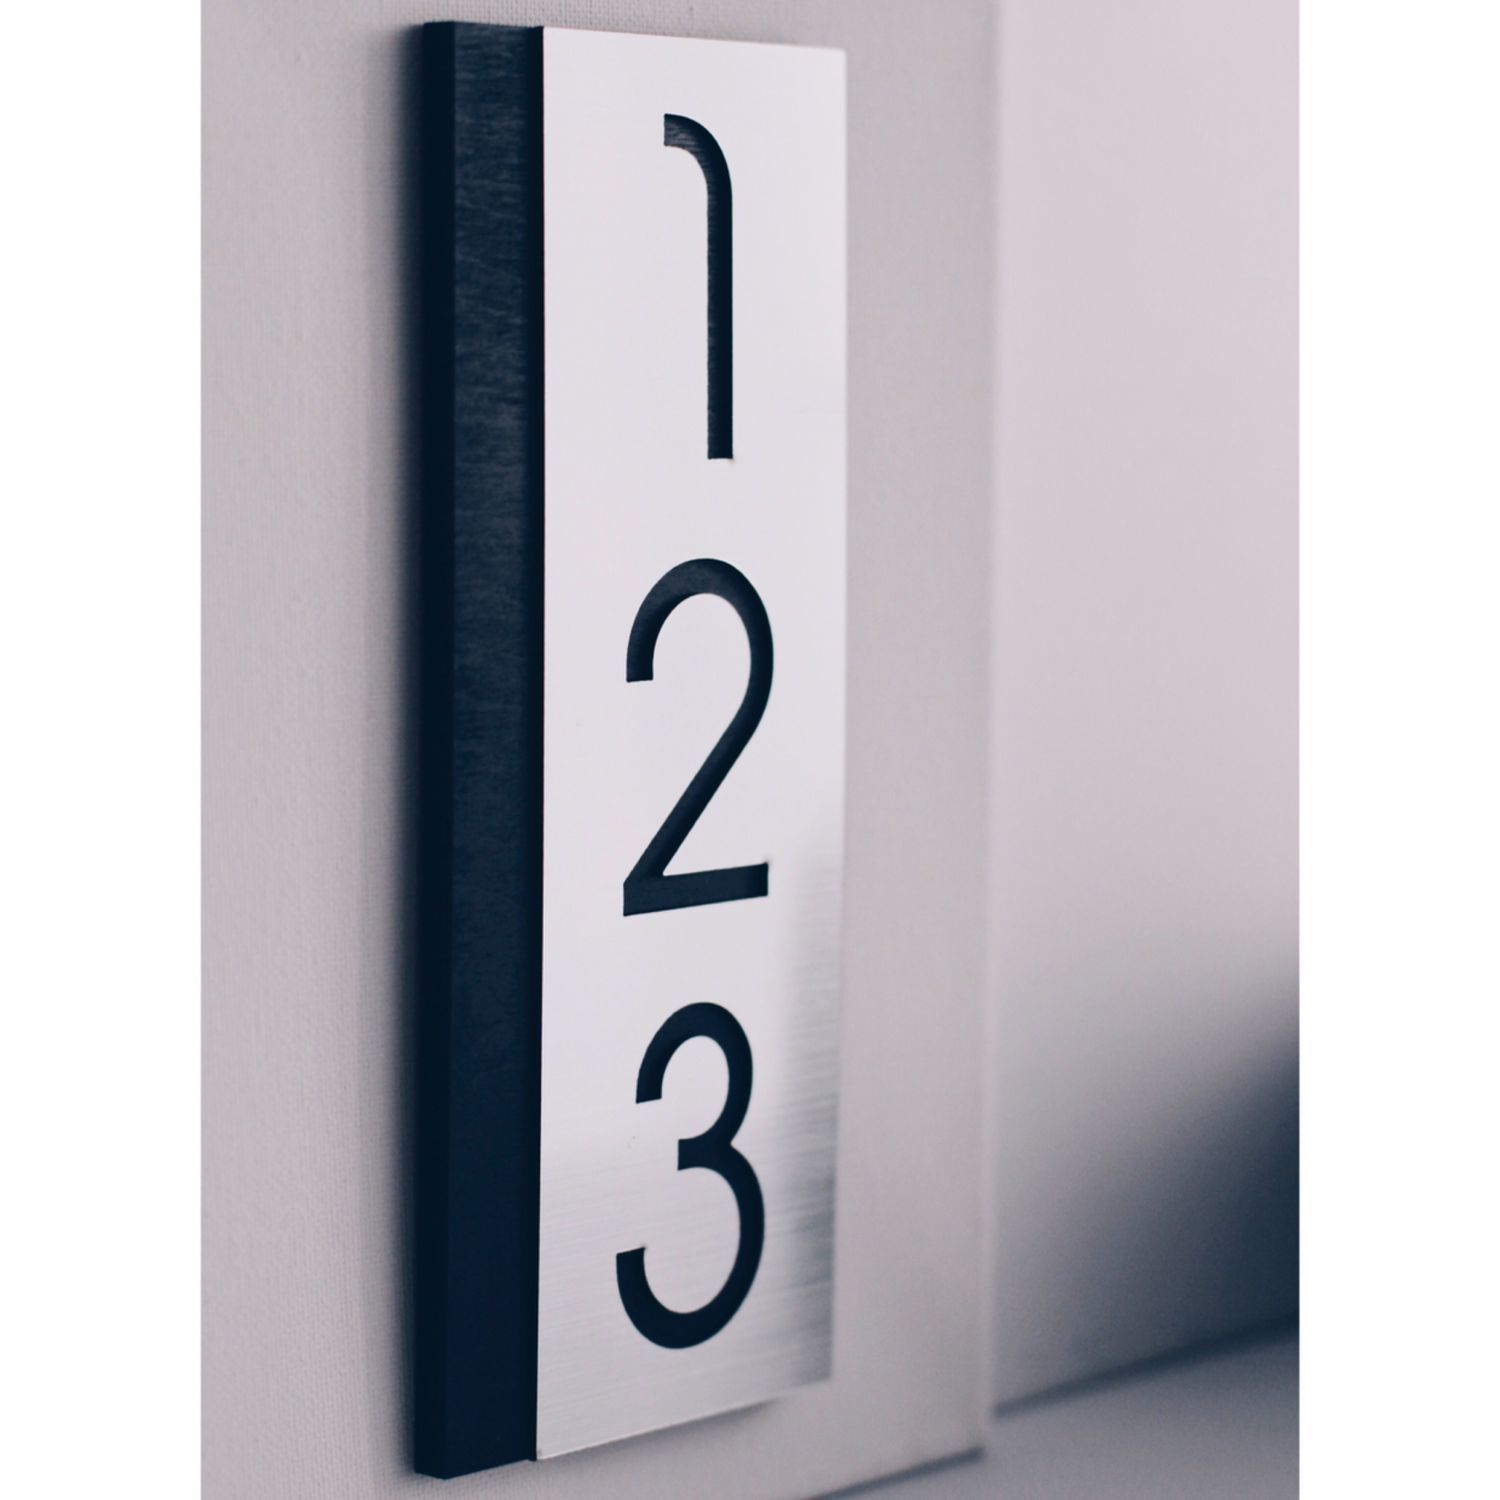 Цифра 1 для квартиры на дверь. Стильные номерки на дверь. Цифра на дверь. Дизайнерские цифры на дверь. Табличка с номером квартиры.